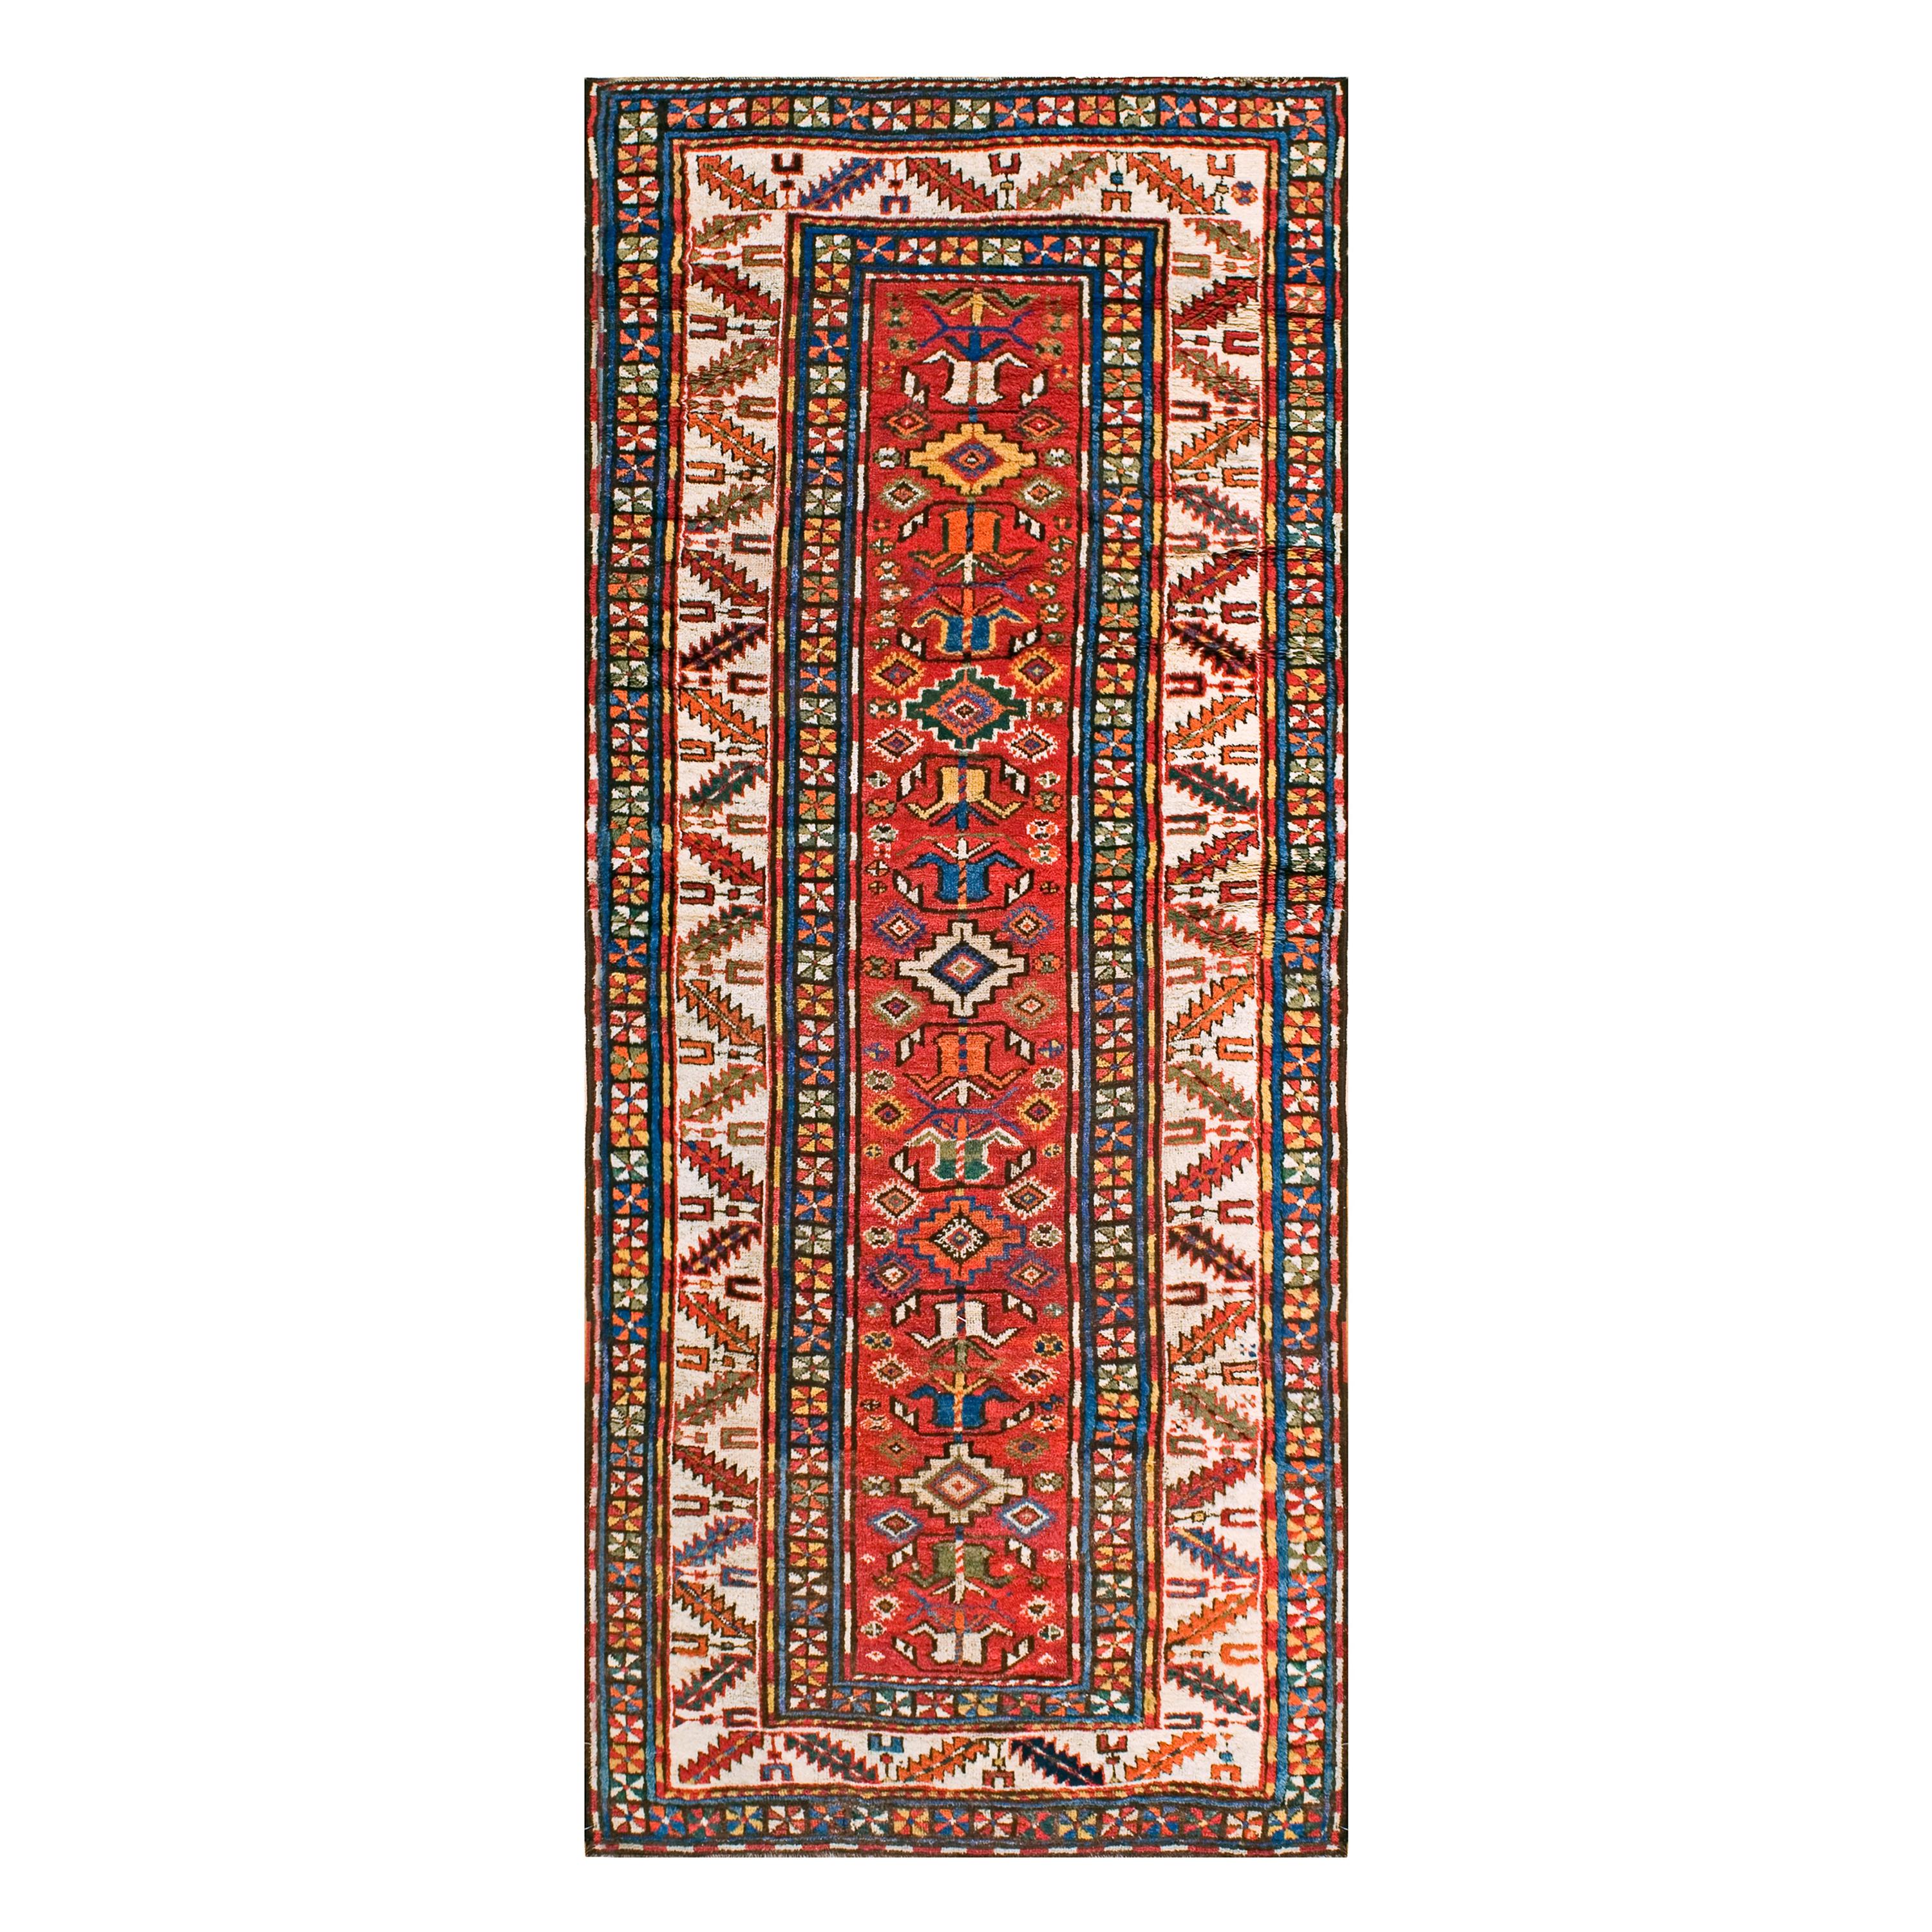 Kaukasischer Kazak-Teppich aus dem 19. Jahrhundert (4' x 9'2" - 122 x 279)